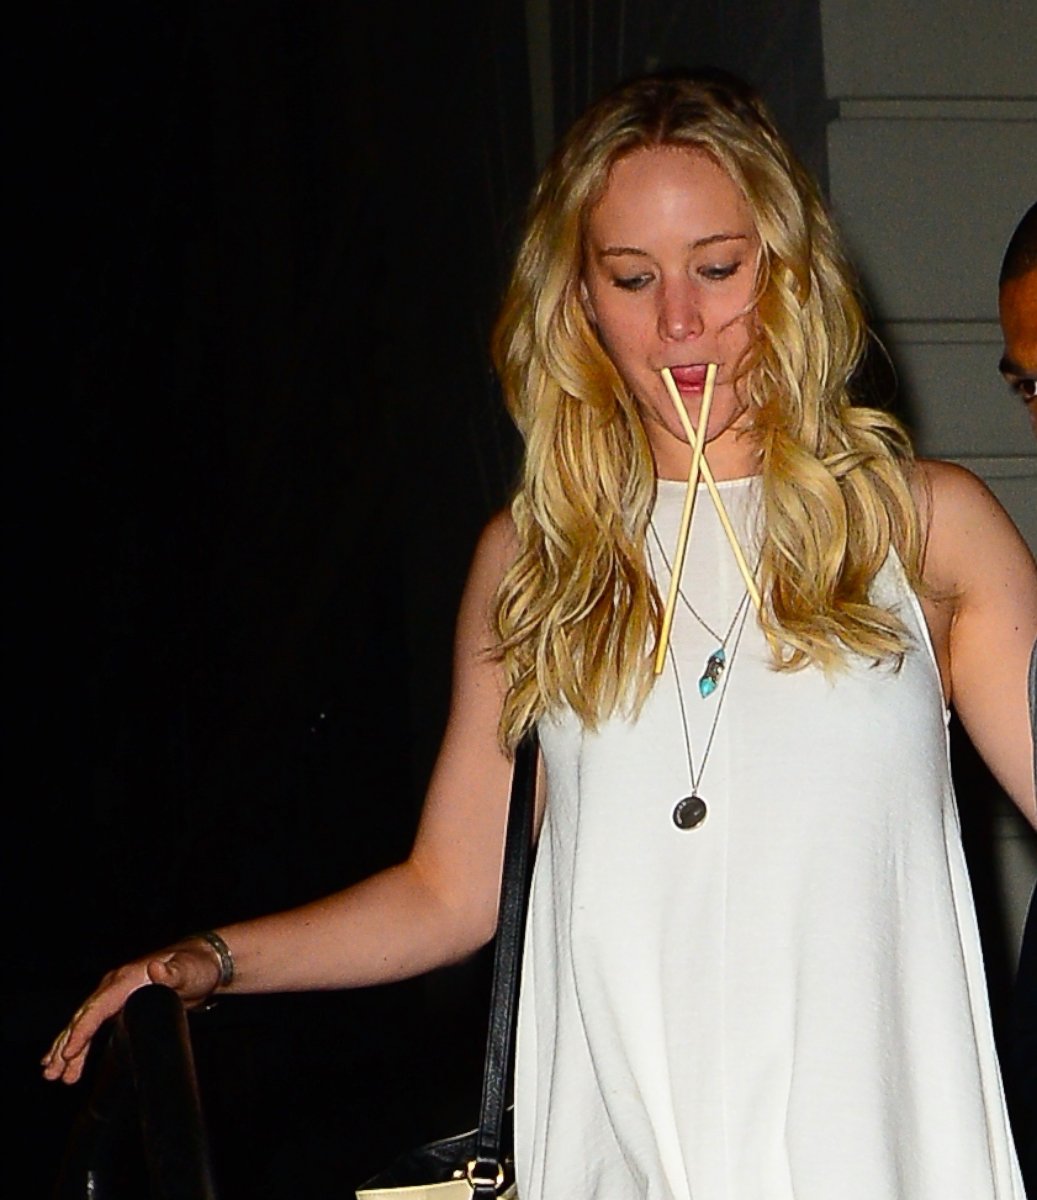 PHOTO: Actress Jennifer Lawrence is seen walking in Soho, June 24, 2015, in New York.